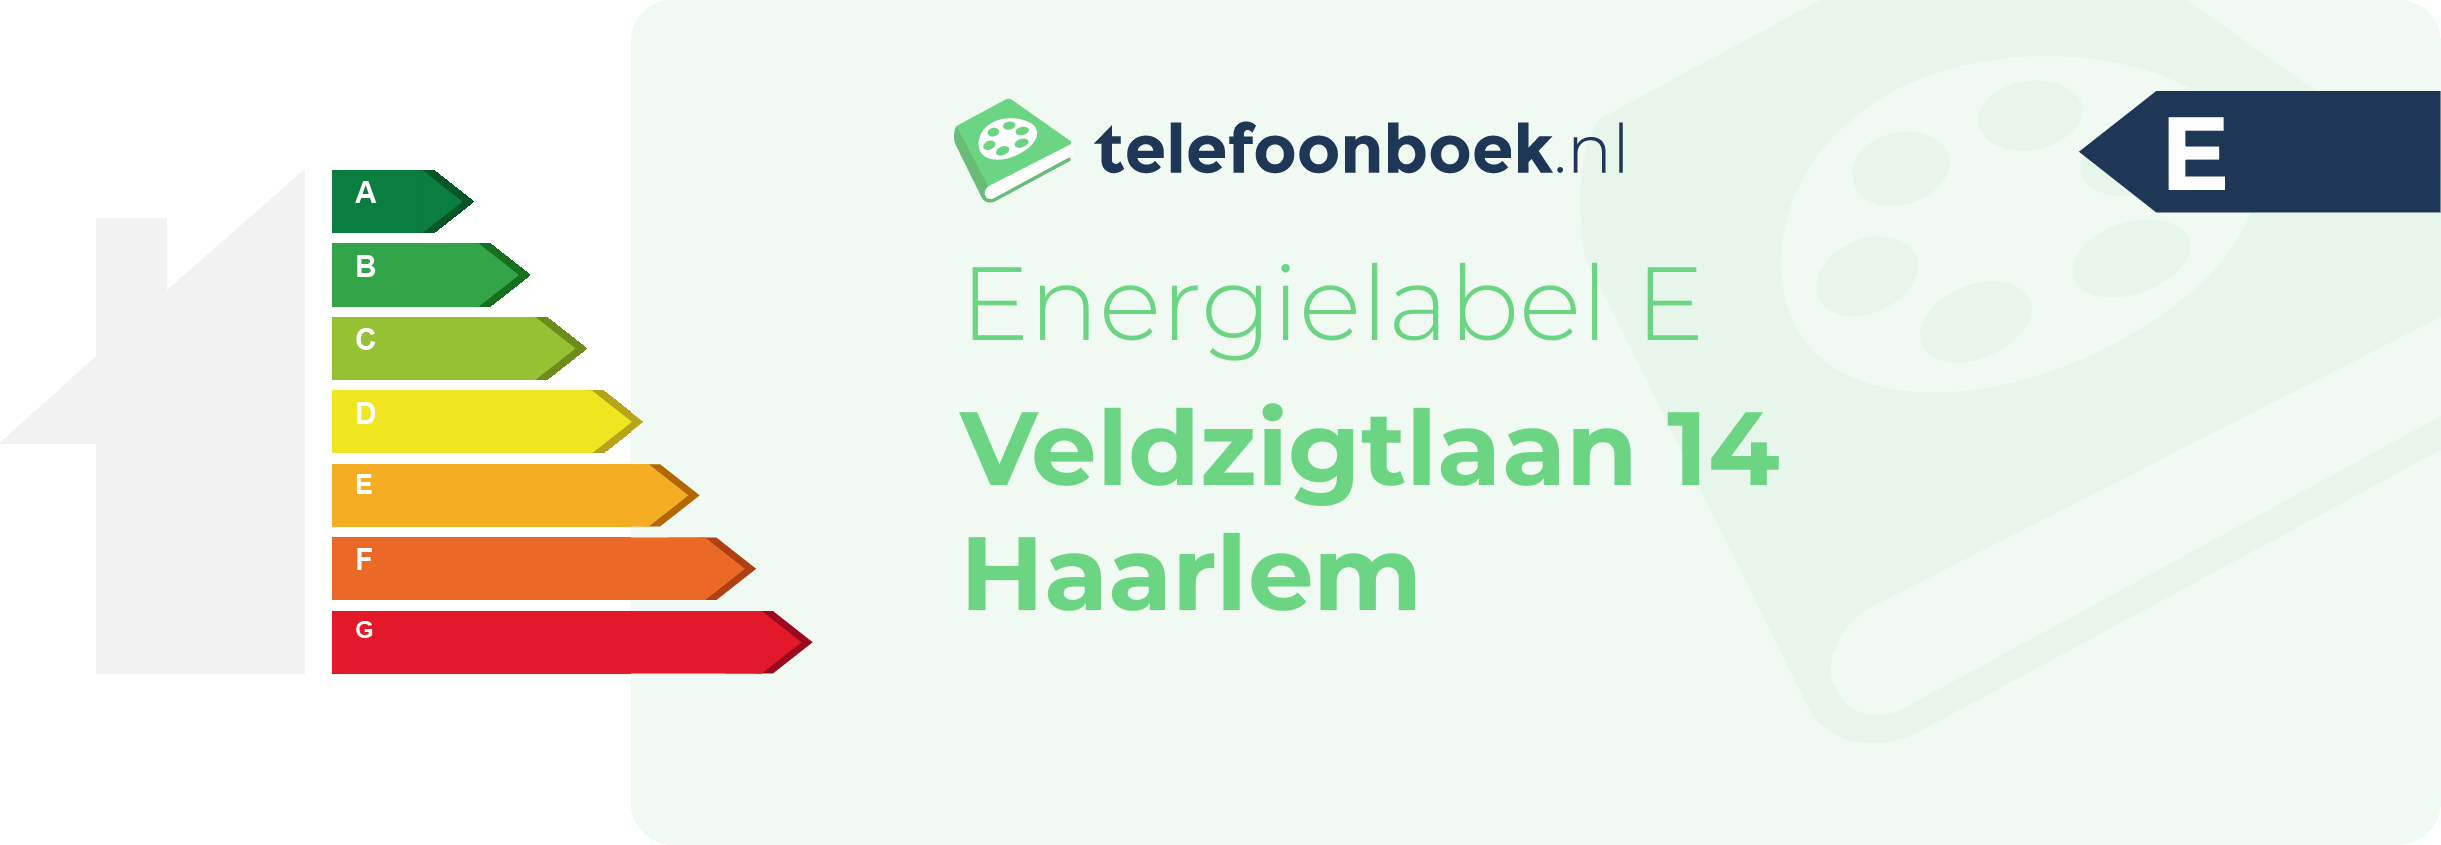 Energielabel Veldzigtlaan 14 Haarlem